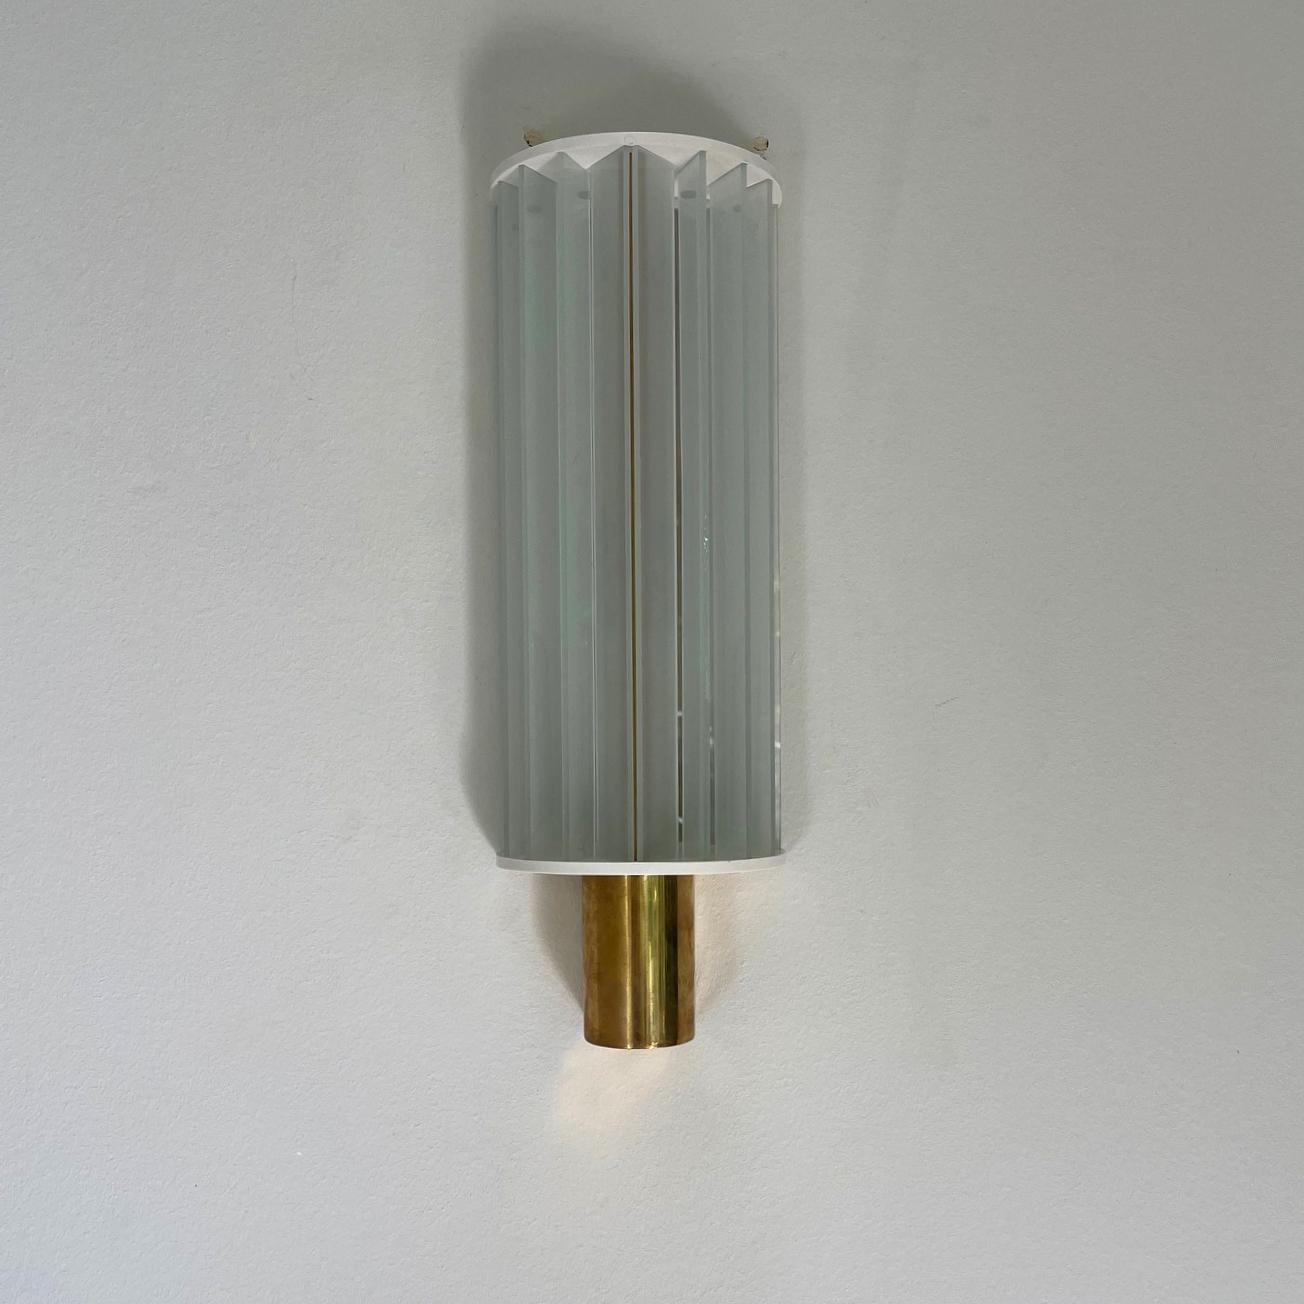 POUL HENNINGSEN & LOUIS POULSEN

THE SCANDINAVIAN MODERN

Rare et sculptural ensemble de lampes allongées de Poul Henningsen (PH) conçues en 1931 et fabriquées en 1934 par Louis Poulsen, Copenhague. Modèle 